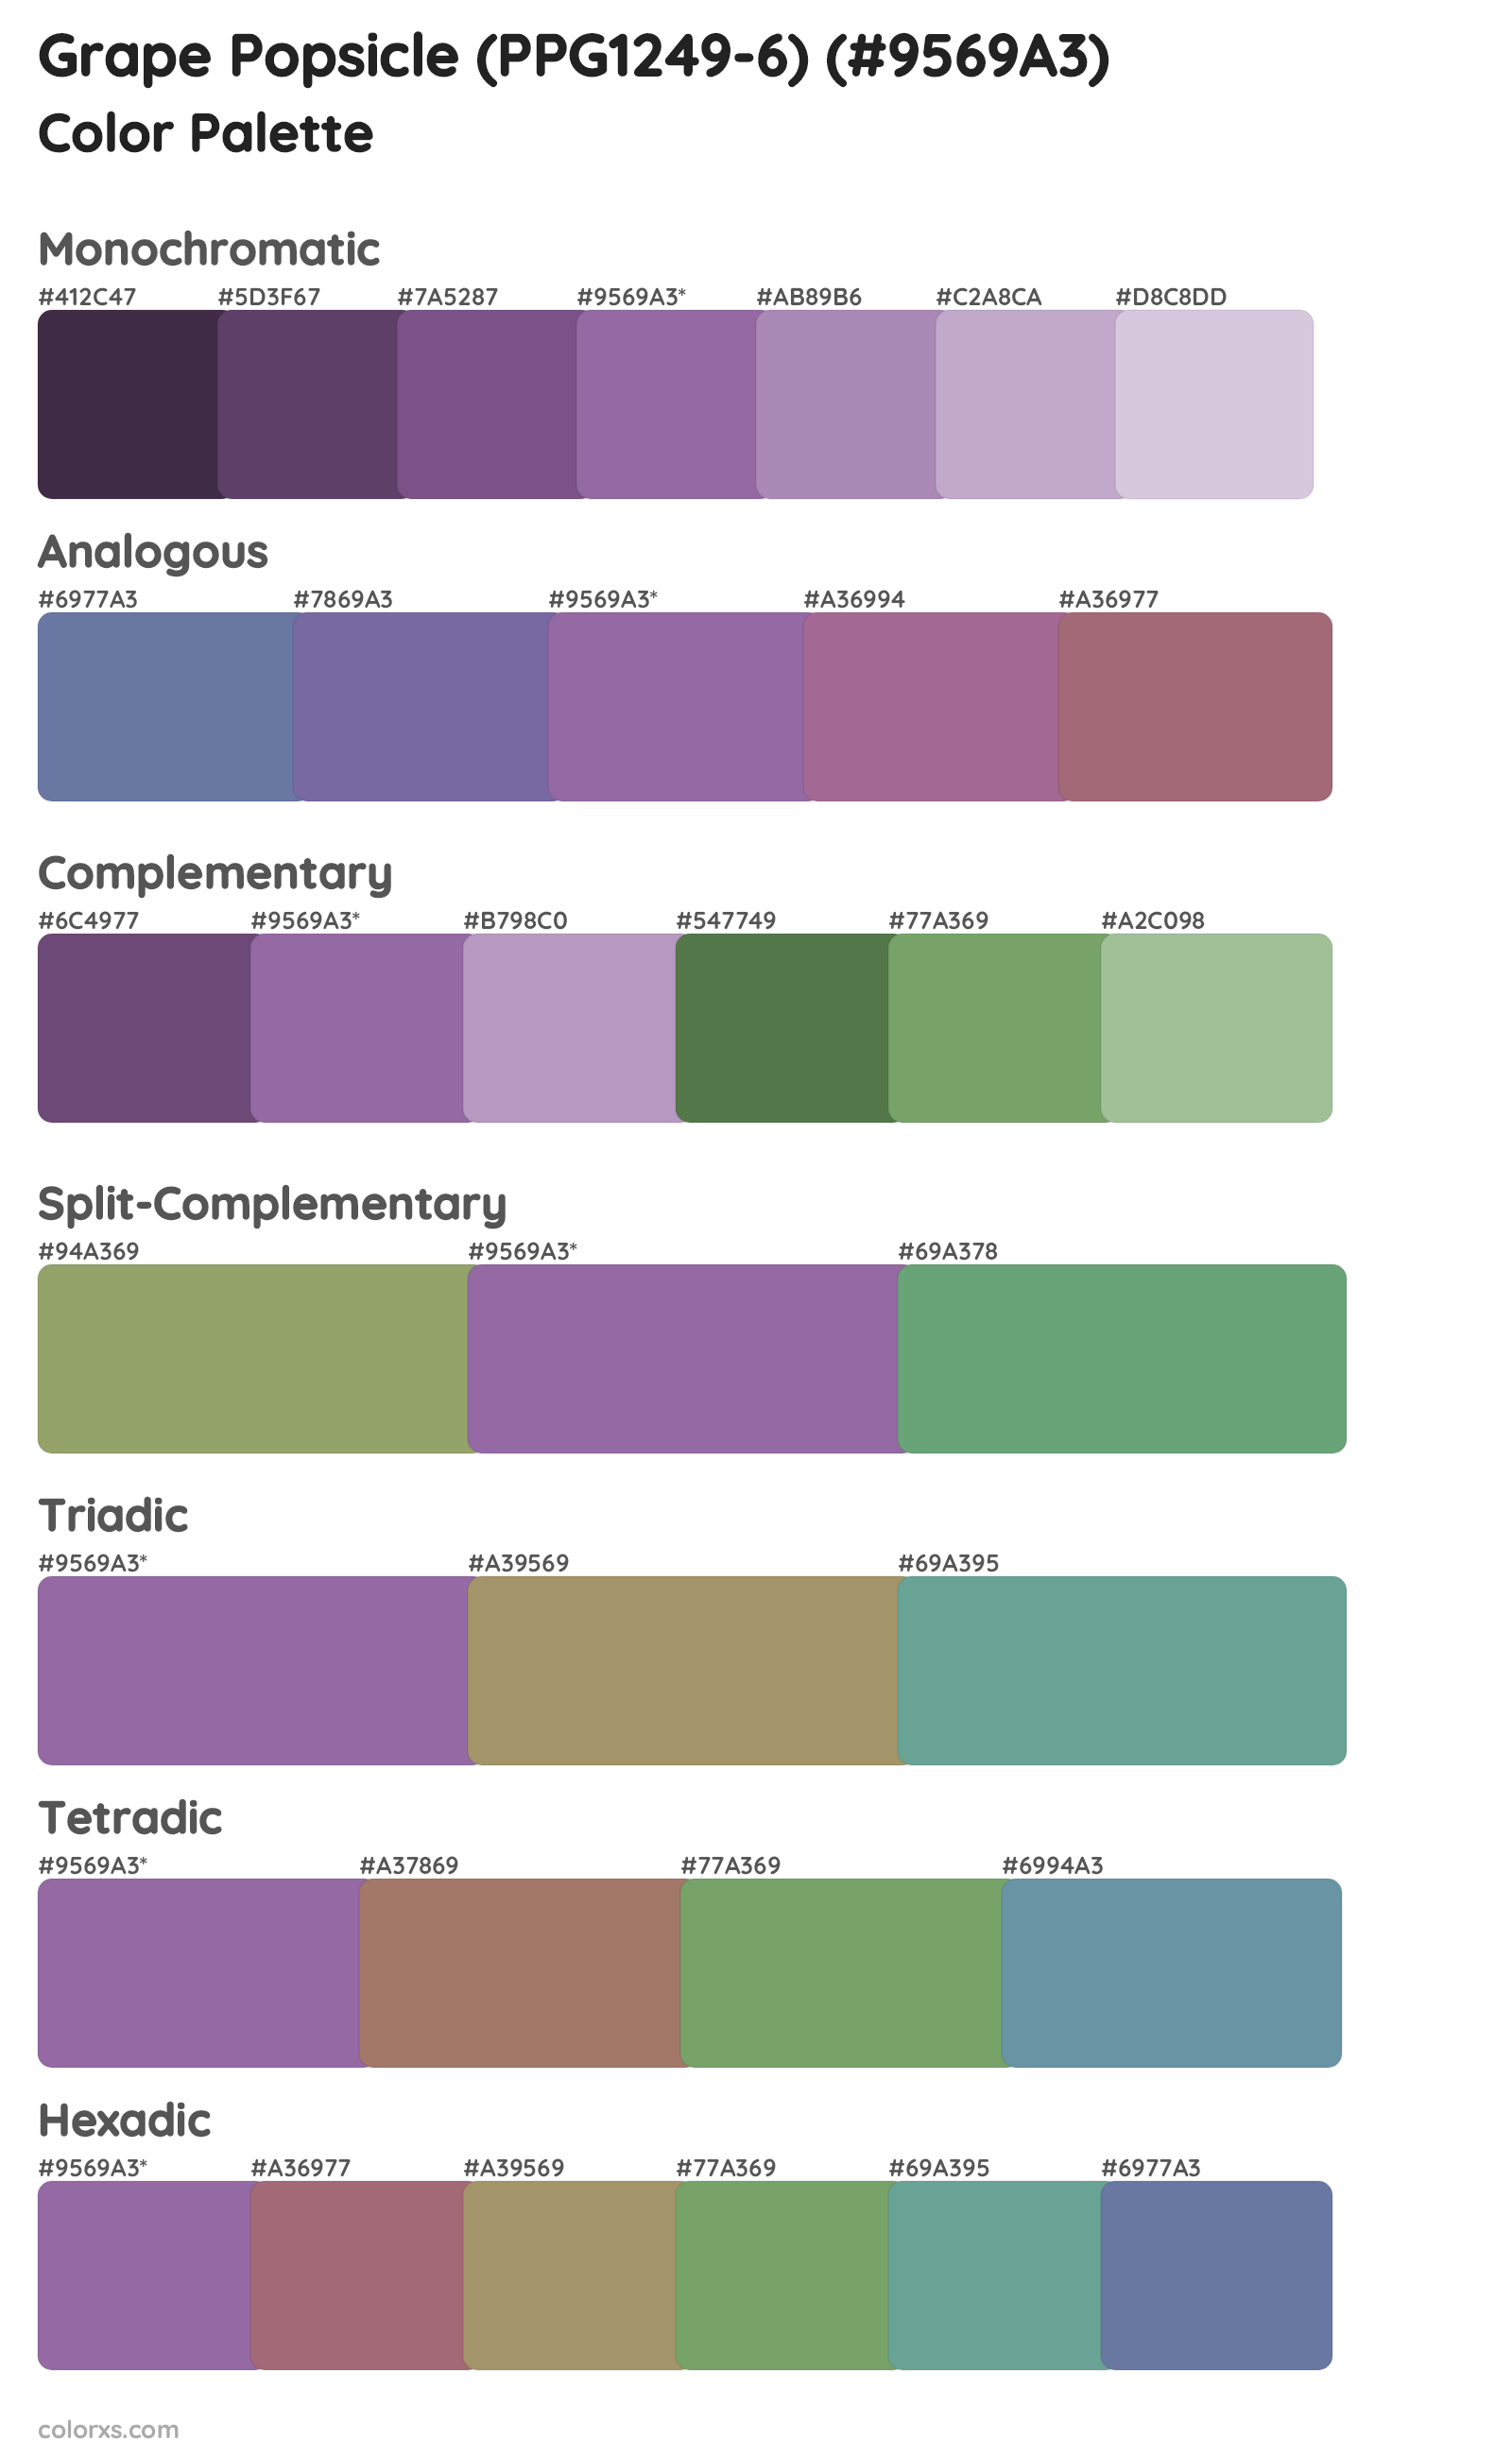 Grape Popsicle (PPG1249-6) Color Scheme Palettes